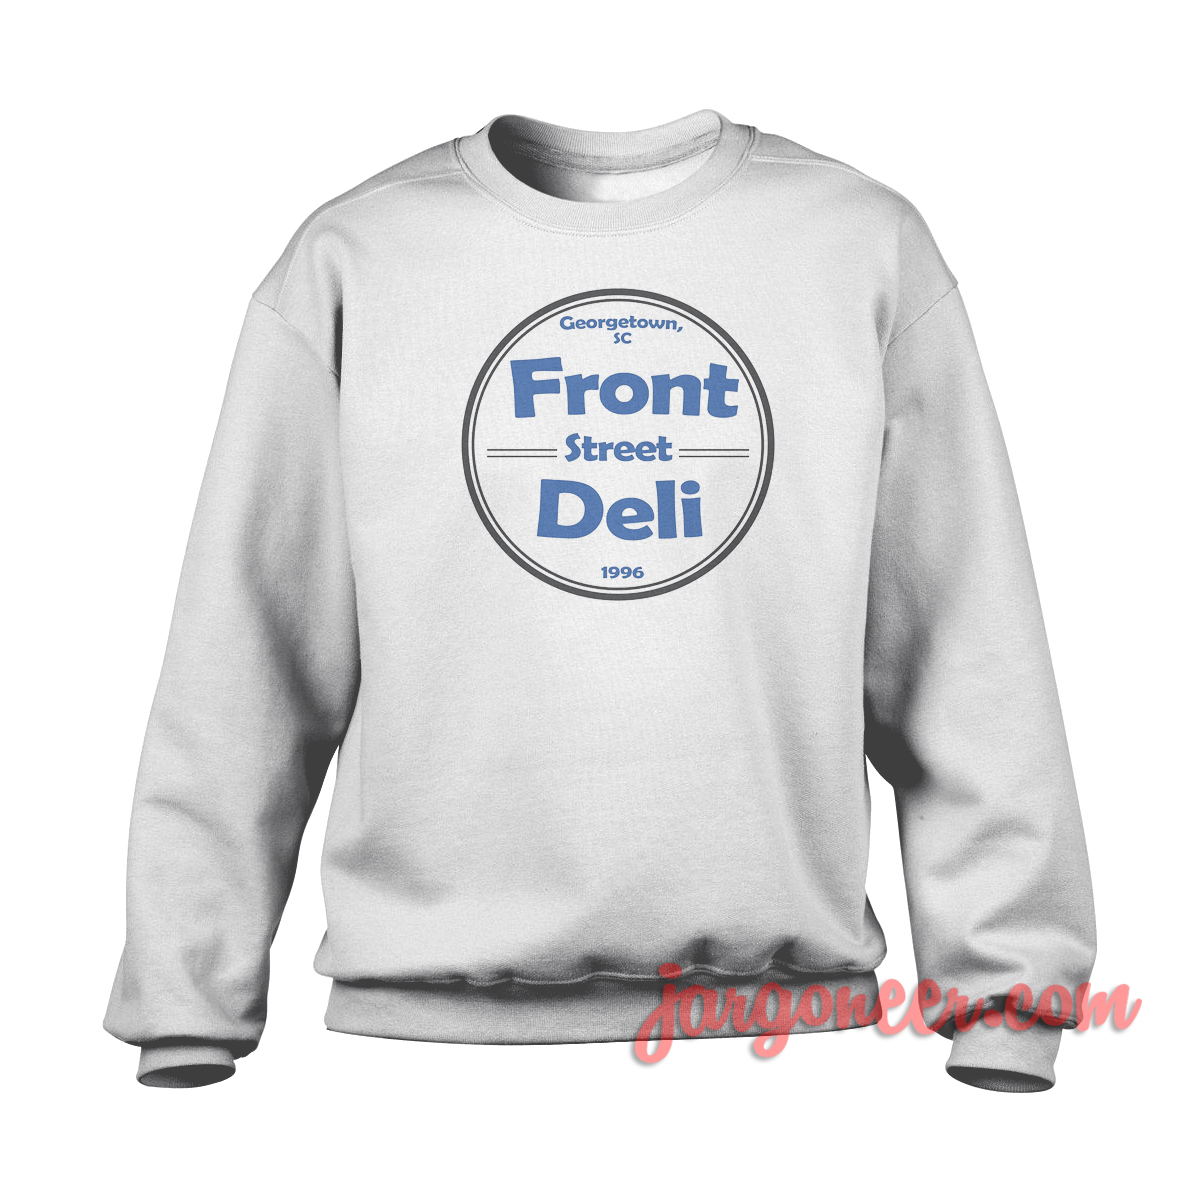 Front Street Deli Blue - Shop Unique Graphic Cool Shirt Designs